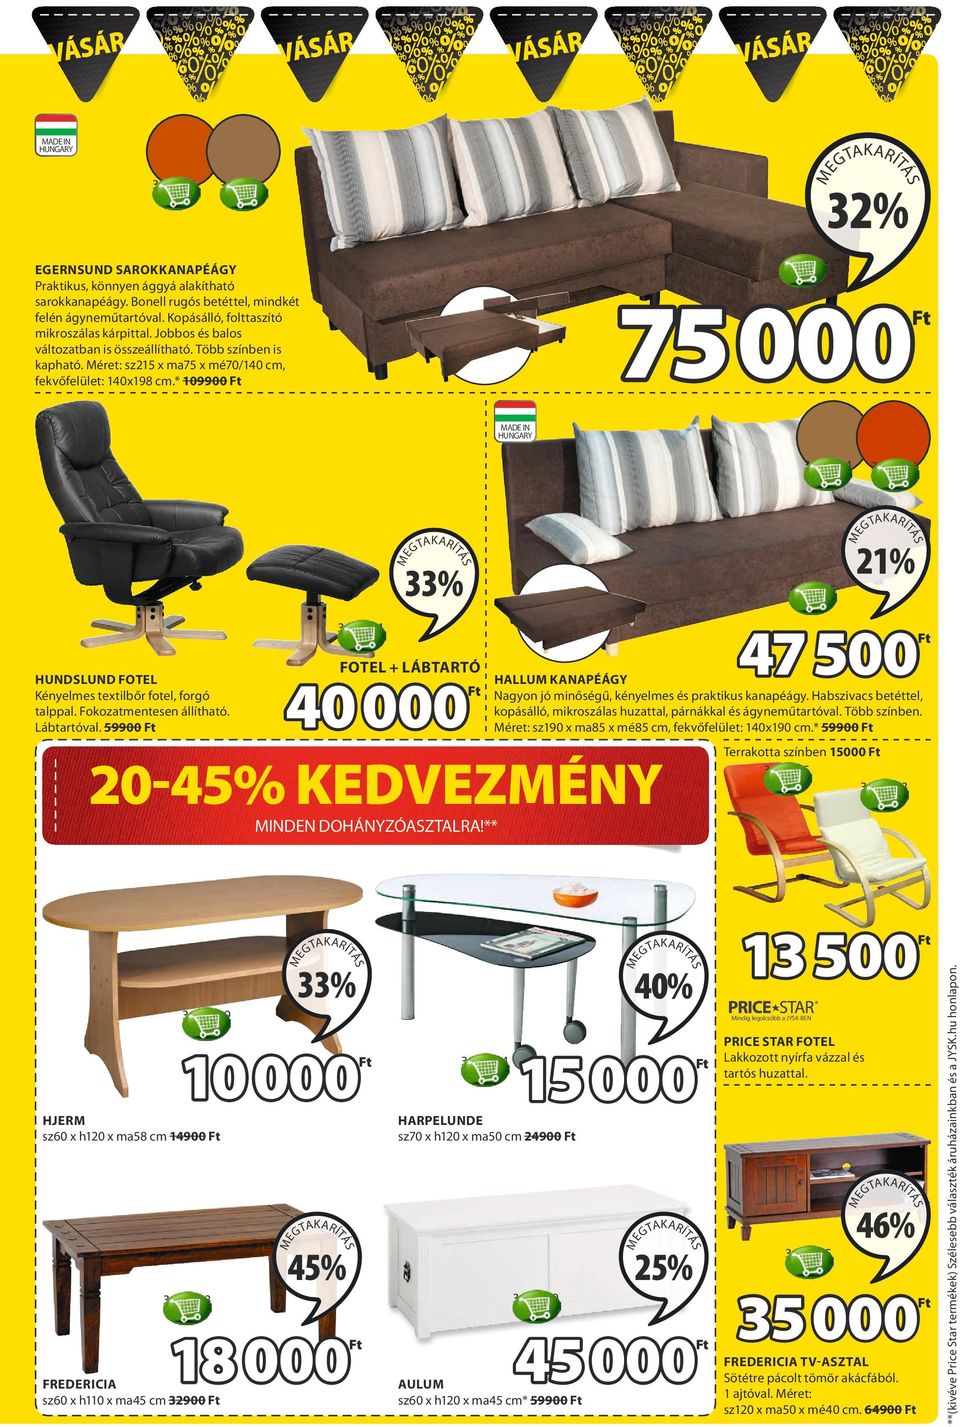 * 109900 75 000 MADE IN HUNGARY 33% 3690065 21% 47 500 3645301 HUNDSLUND FOTEL Kényelmes textilbőr fotel, forgó talppal. Fokozatmentesen állítható. Lábtartóval.